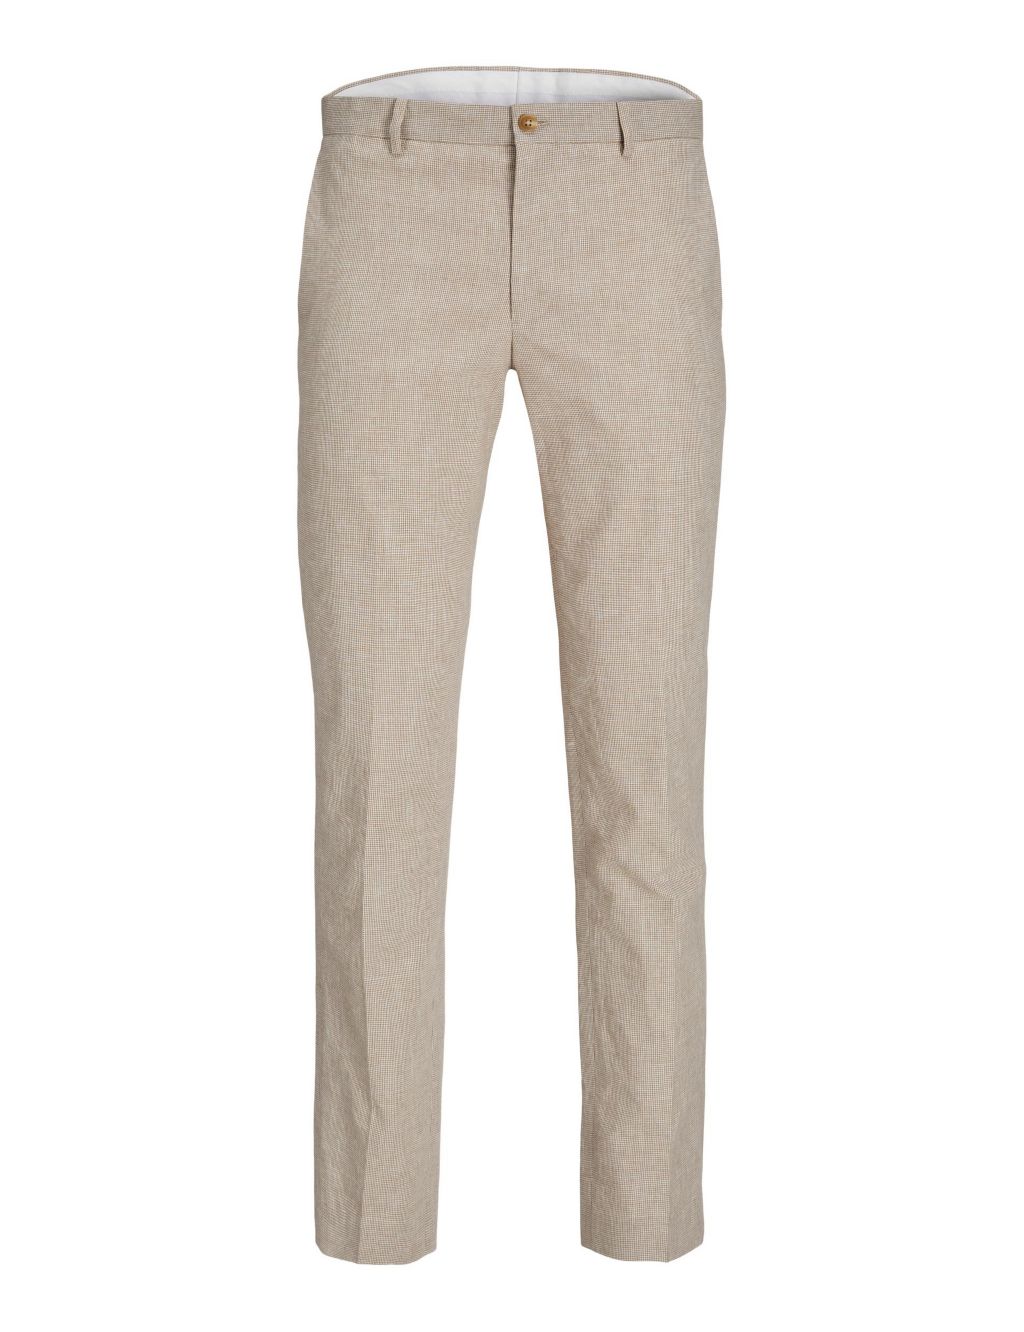 Slim Fit Linen Rich Single Pleat Trousers image 2